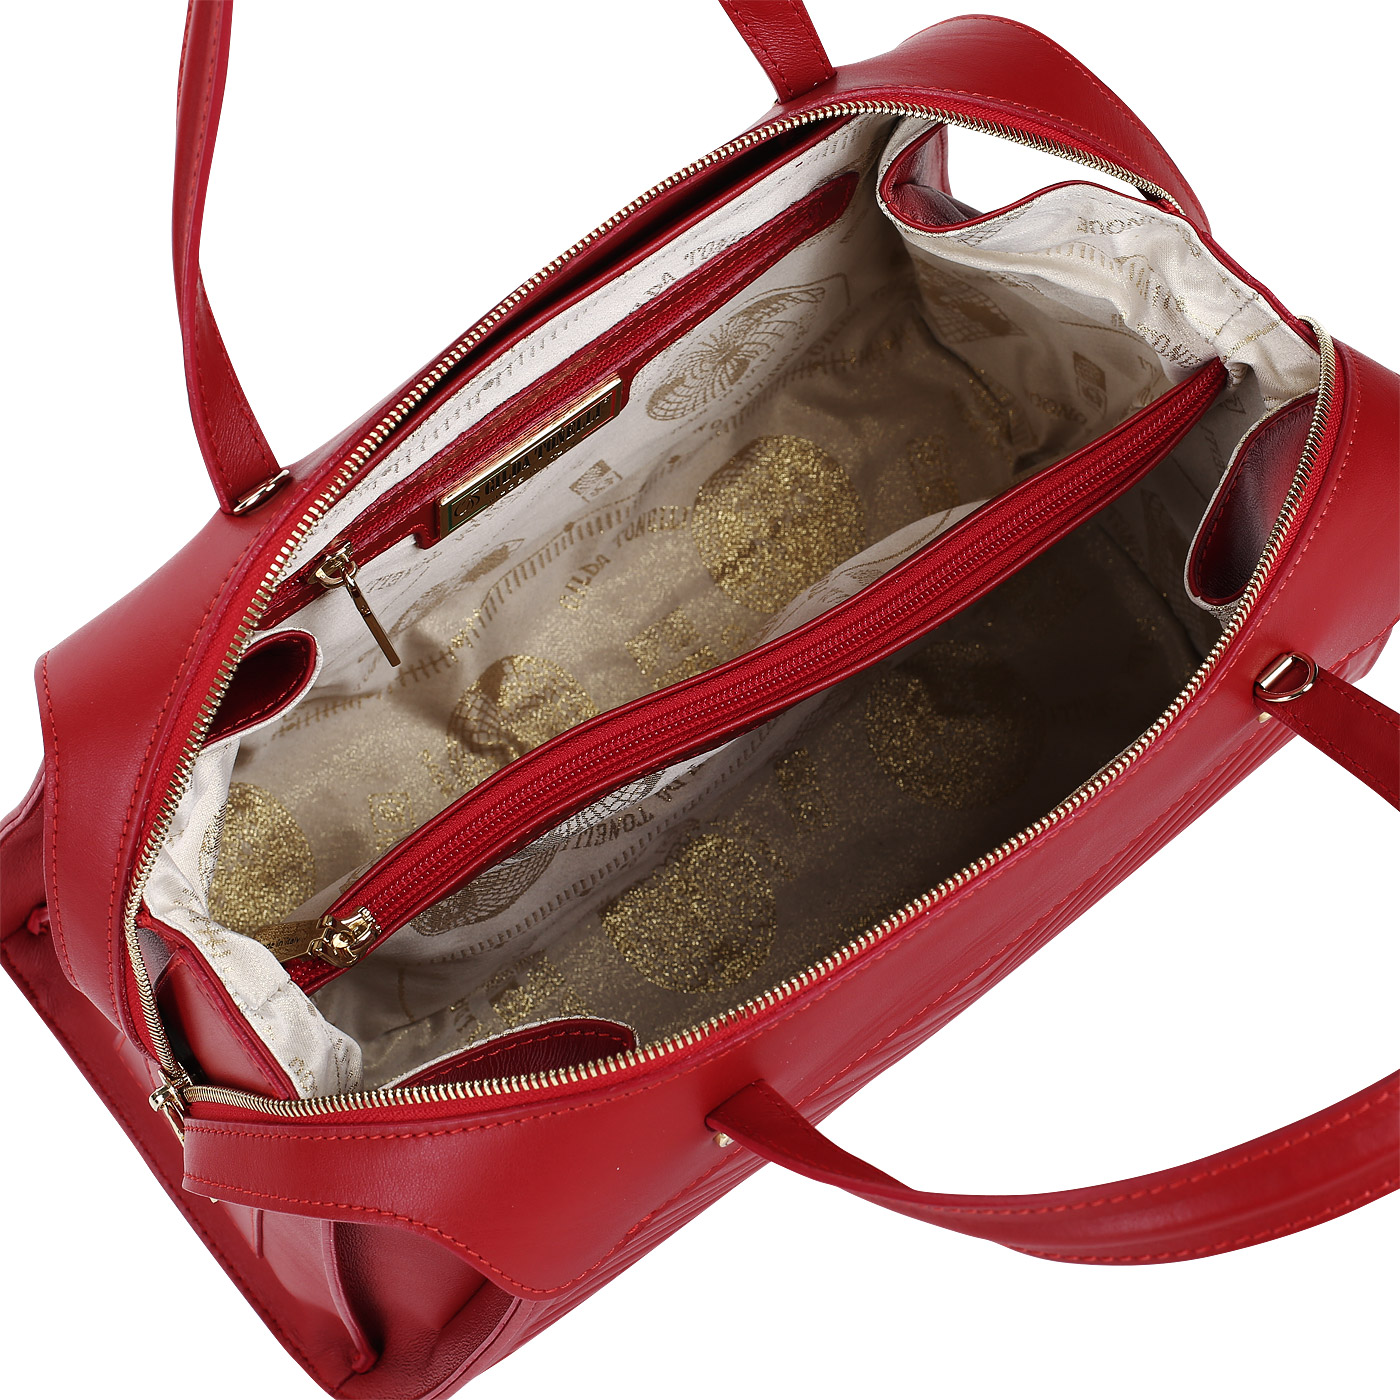 Женская вместительная сумка из красной кожи Gilda Tonelli Tresor